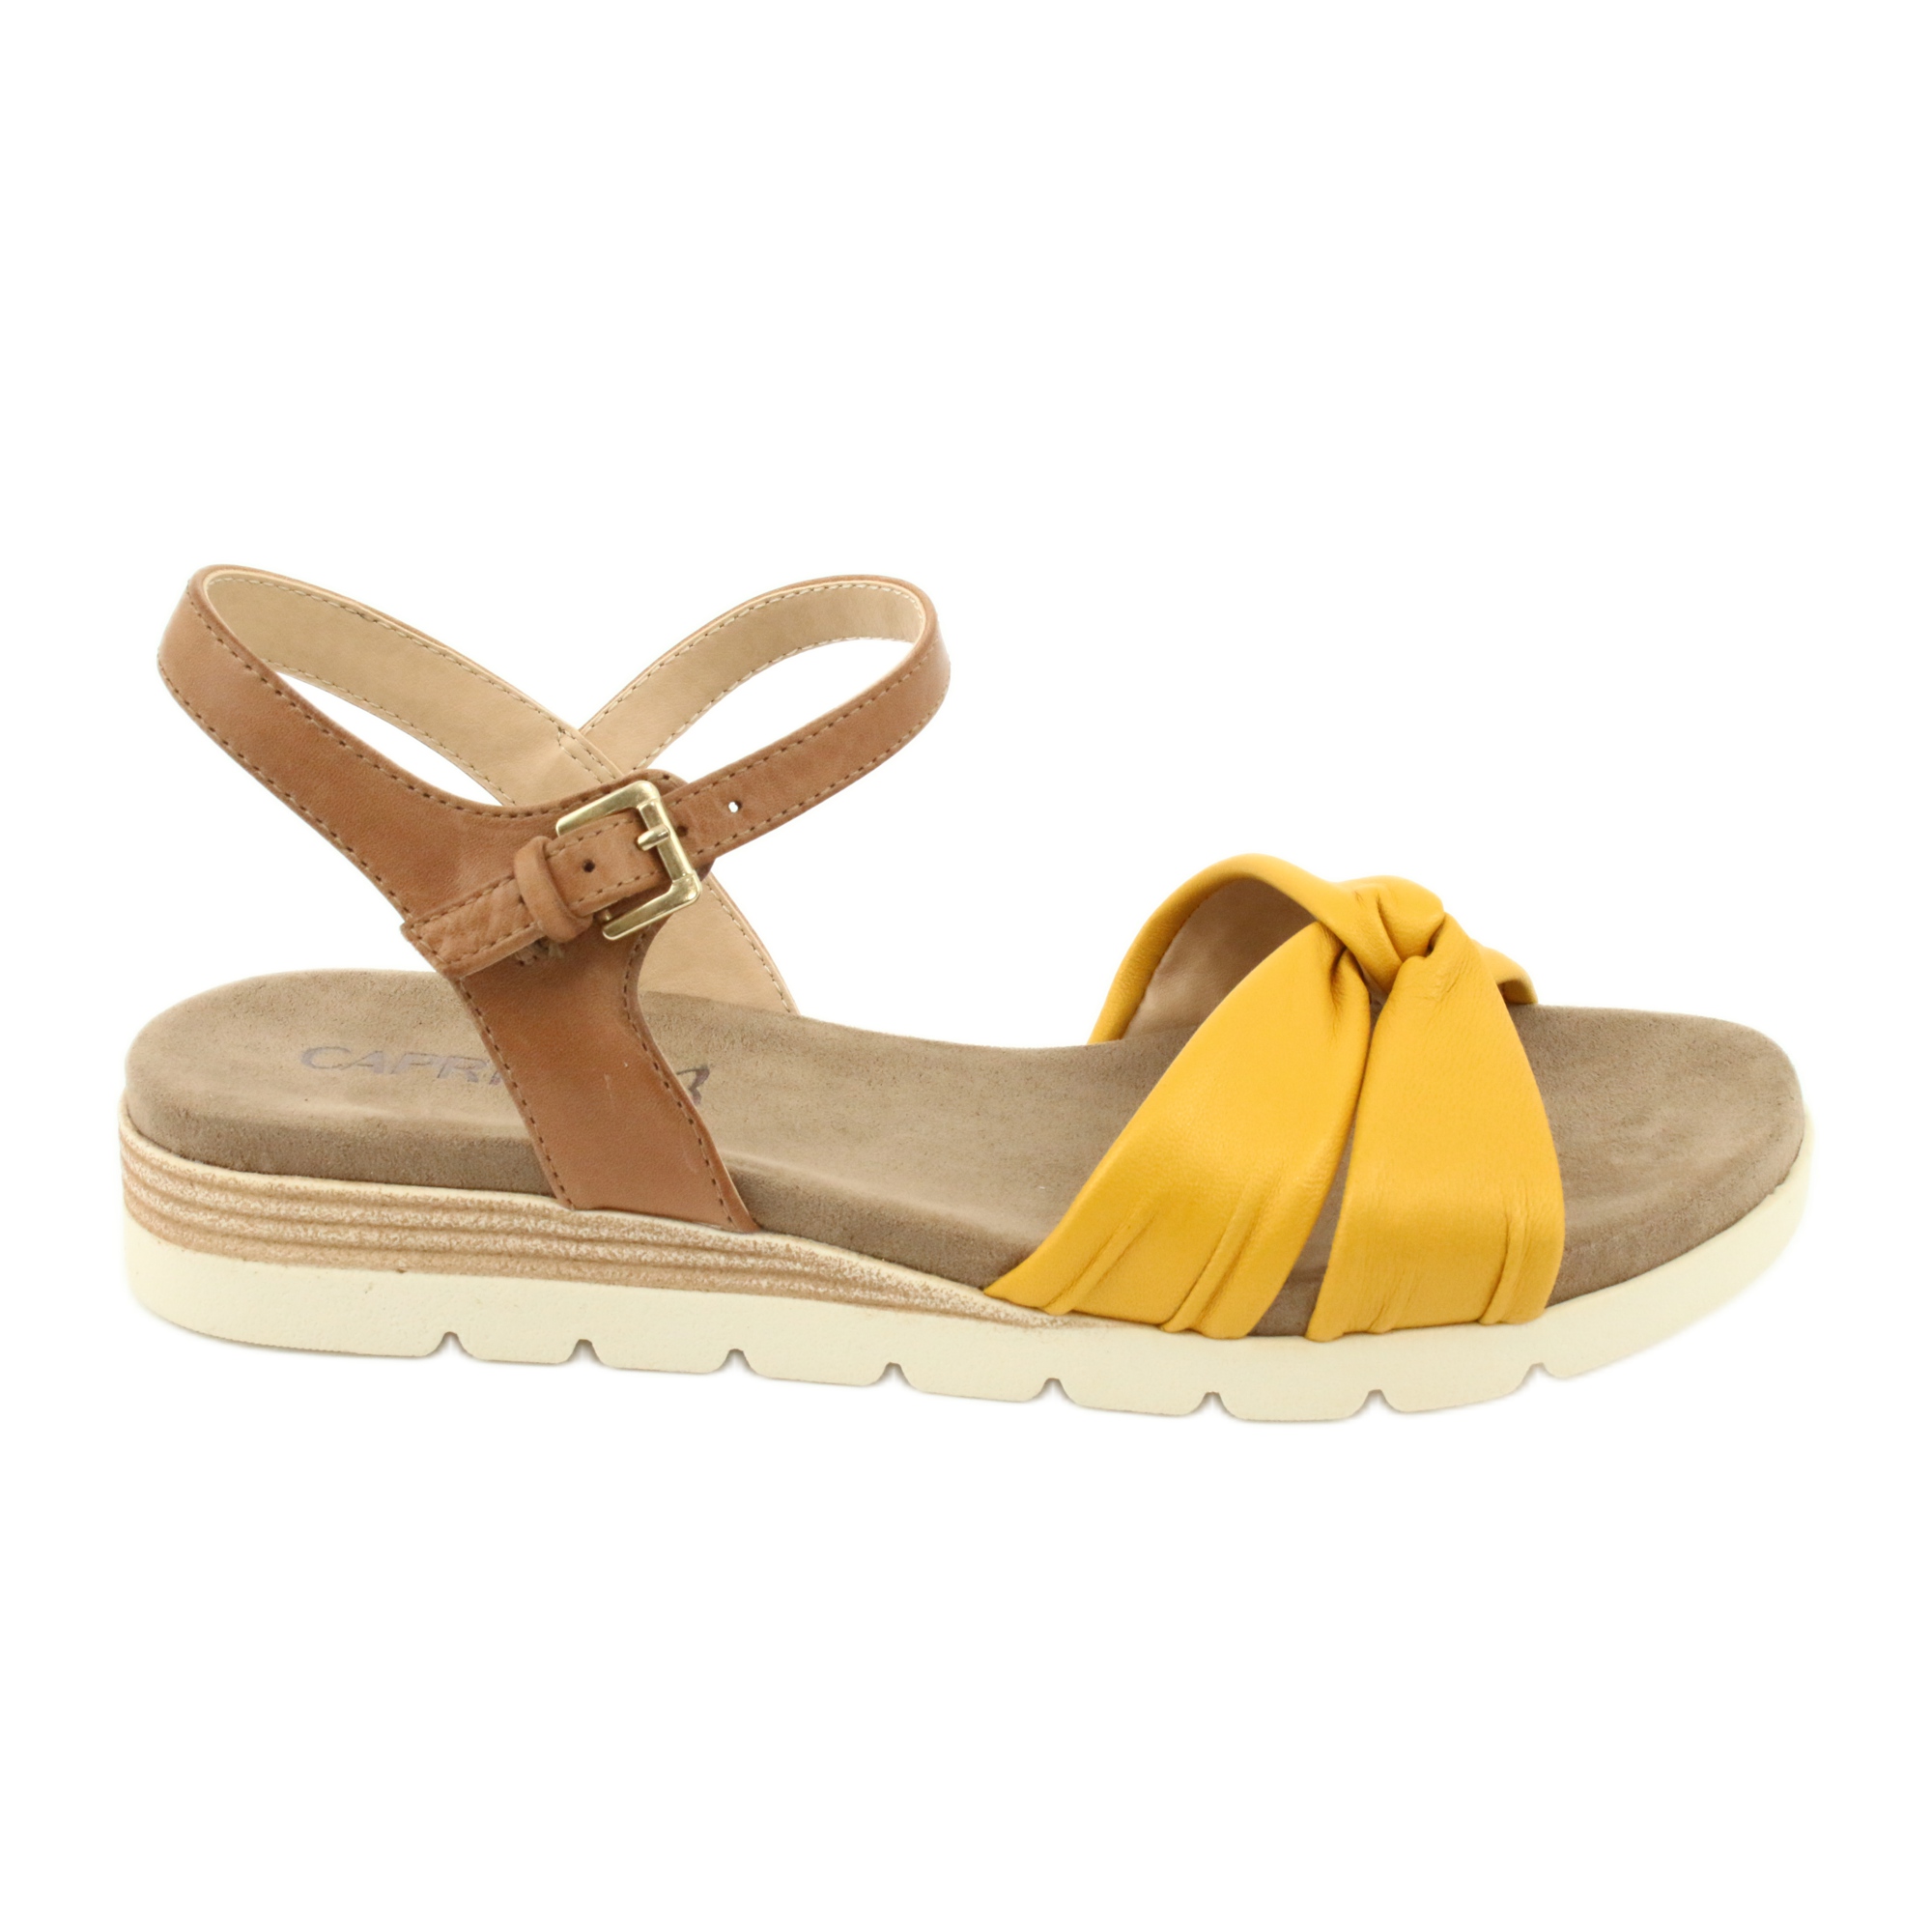 Caprice sandały skórzane beżowe/lemon brązowe żółte